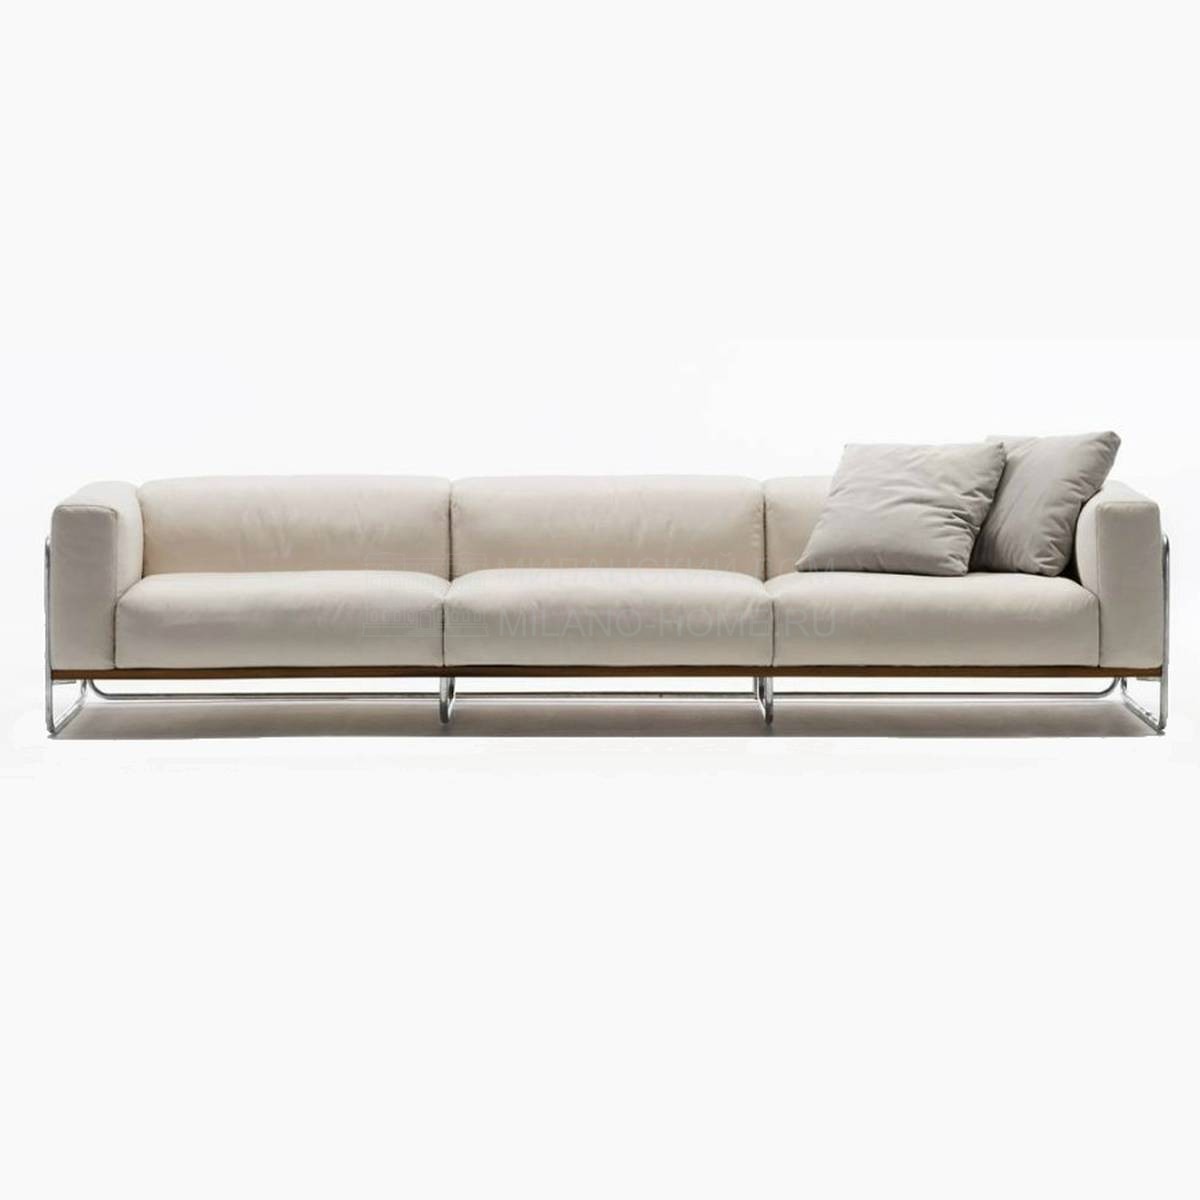 Прямой диван Filo sofa из Италии фабрики LIVING DIVANI